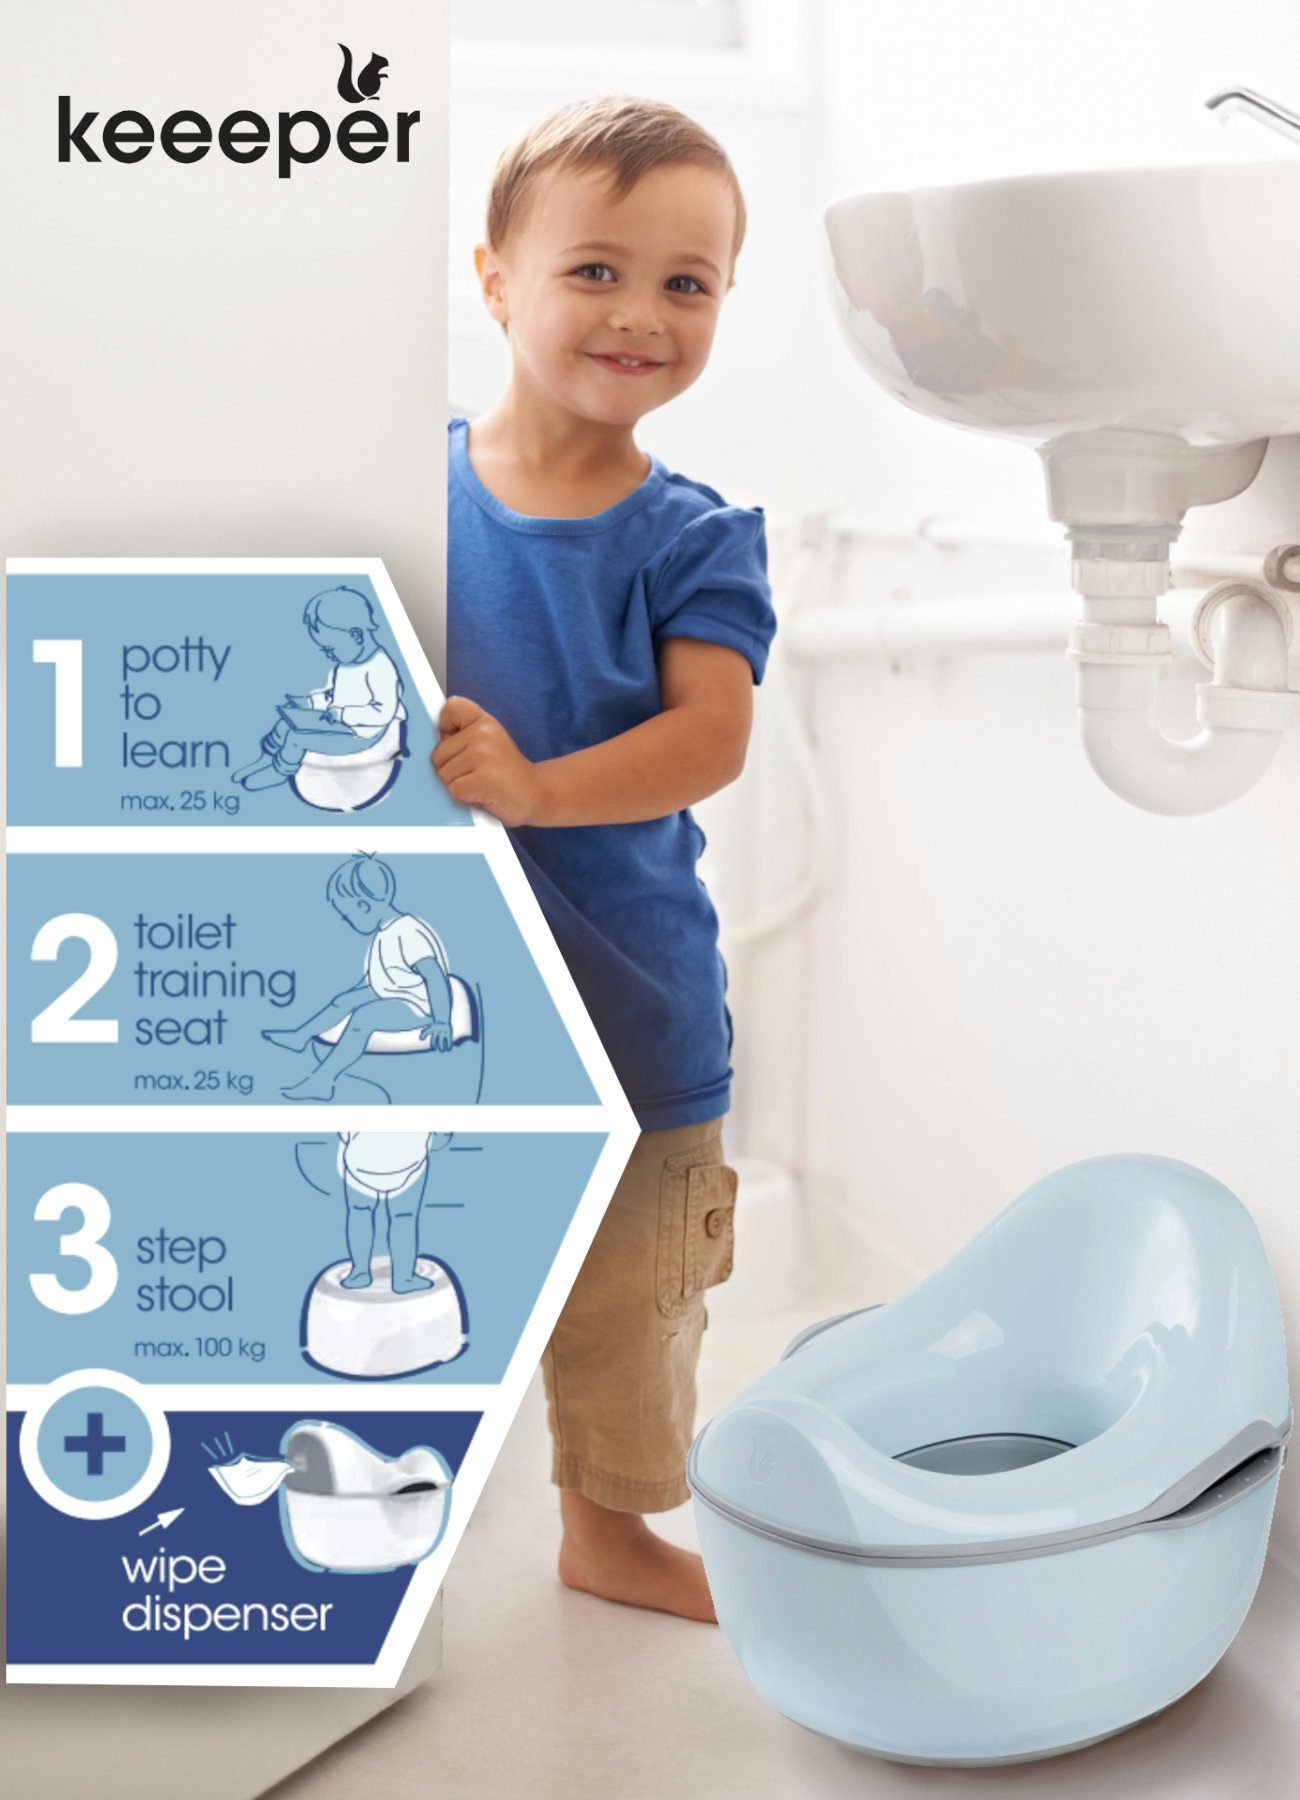 keeeper Toilettentrainer babytopf - kasimir schützt blue, 4in1, Europe, in deluxe weltweit FSC® Wald cloudy - Made